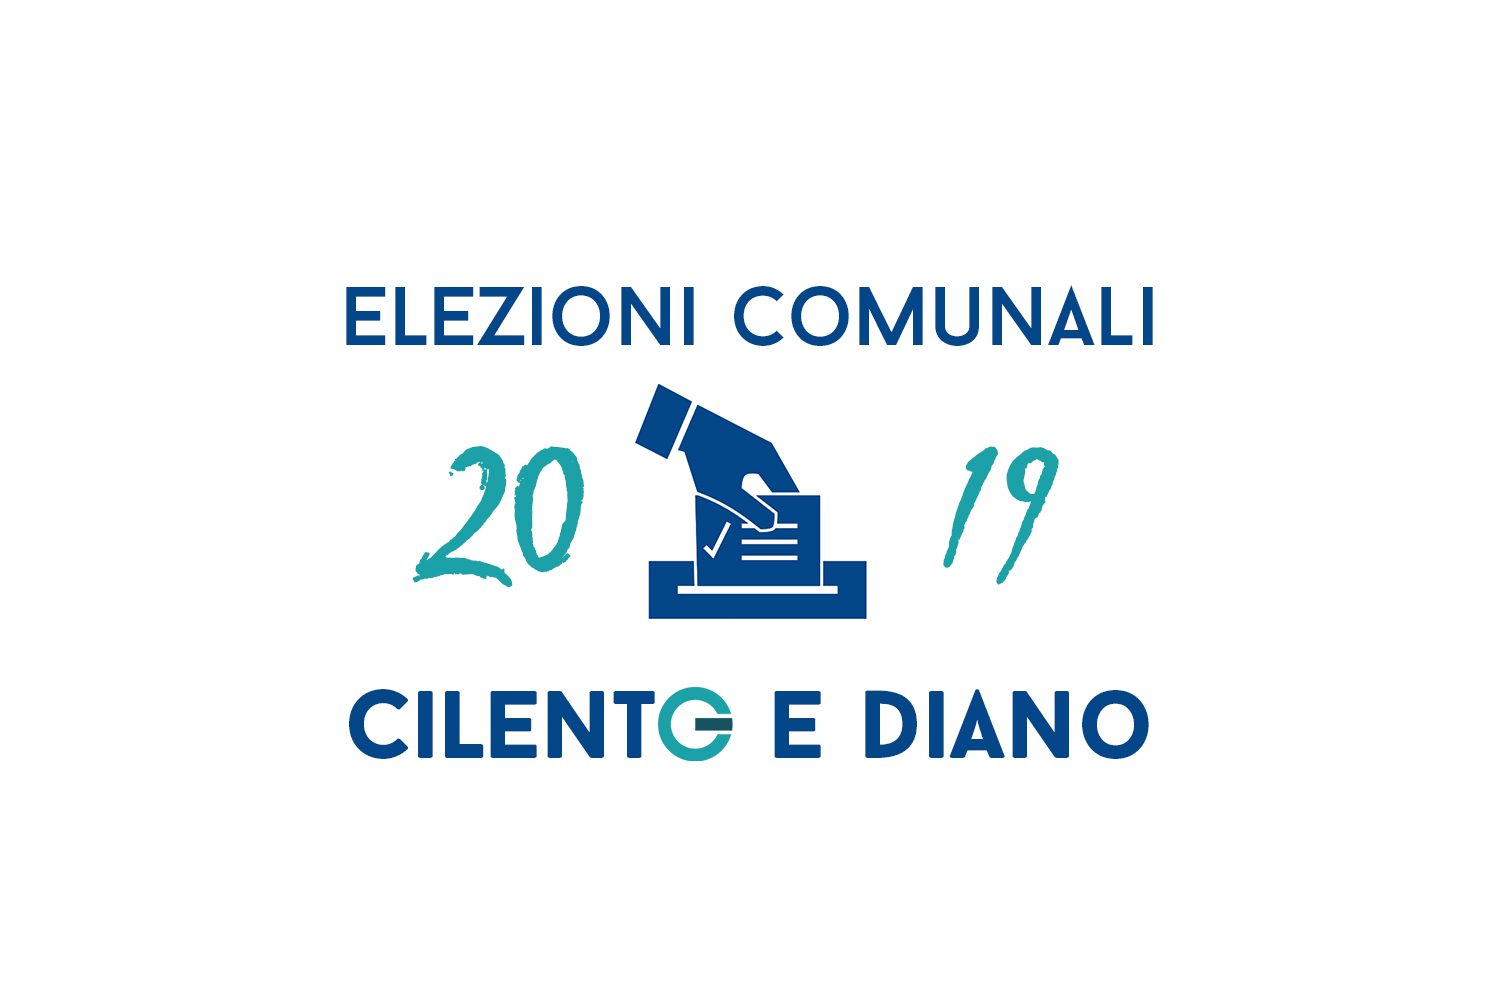 Elezioni Comunali in Cilento e Vallo di Diano: affluenza alle urne